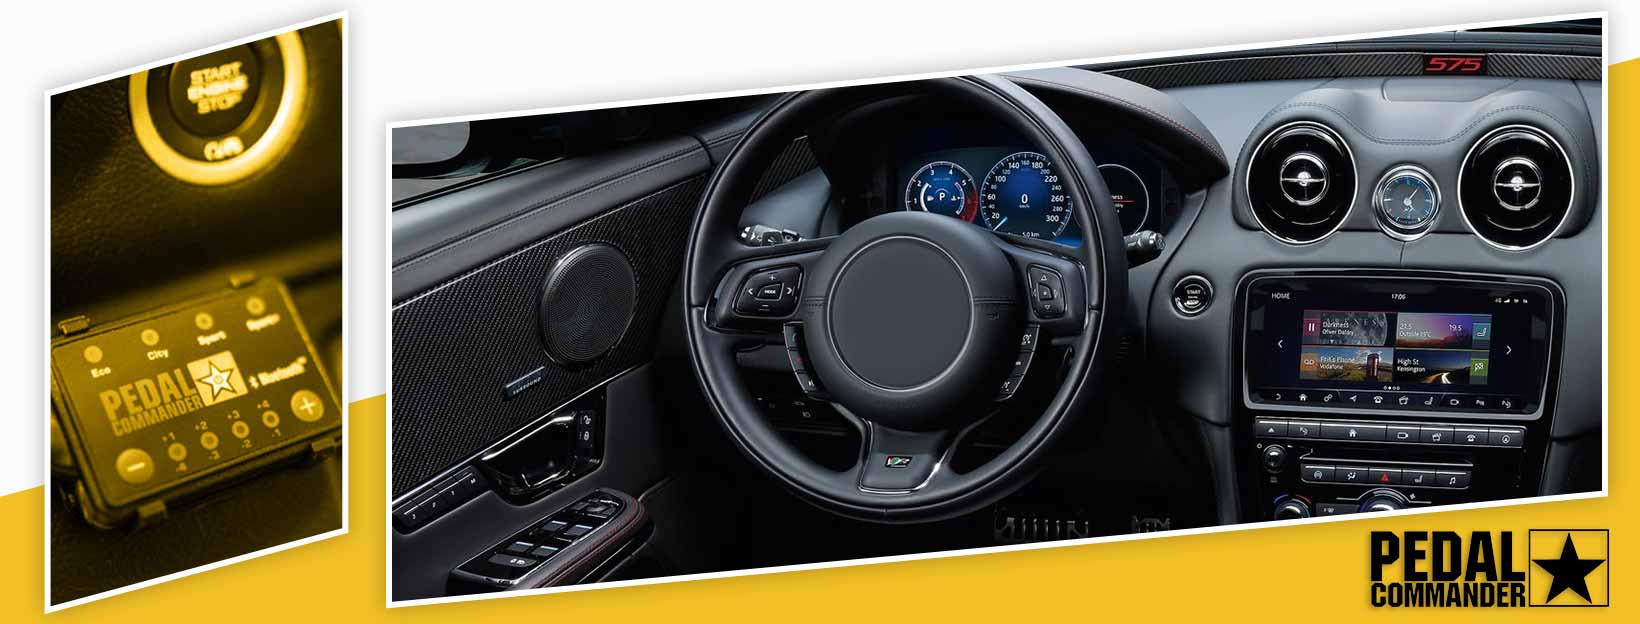 Pedal Commander for Jaguar XJR - interior